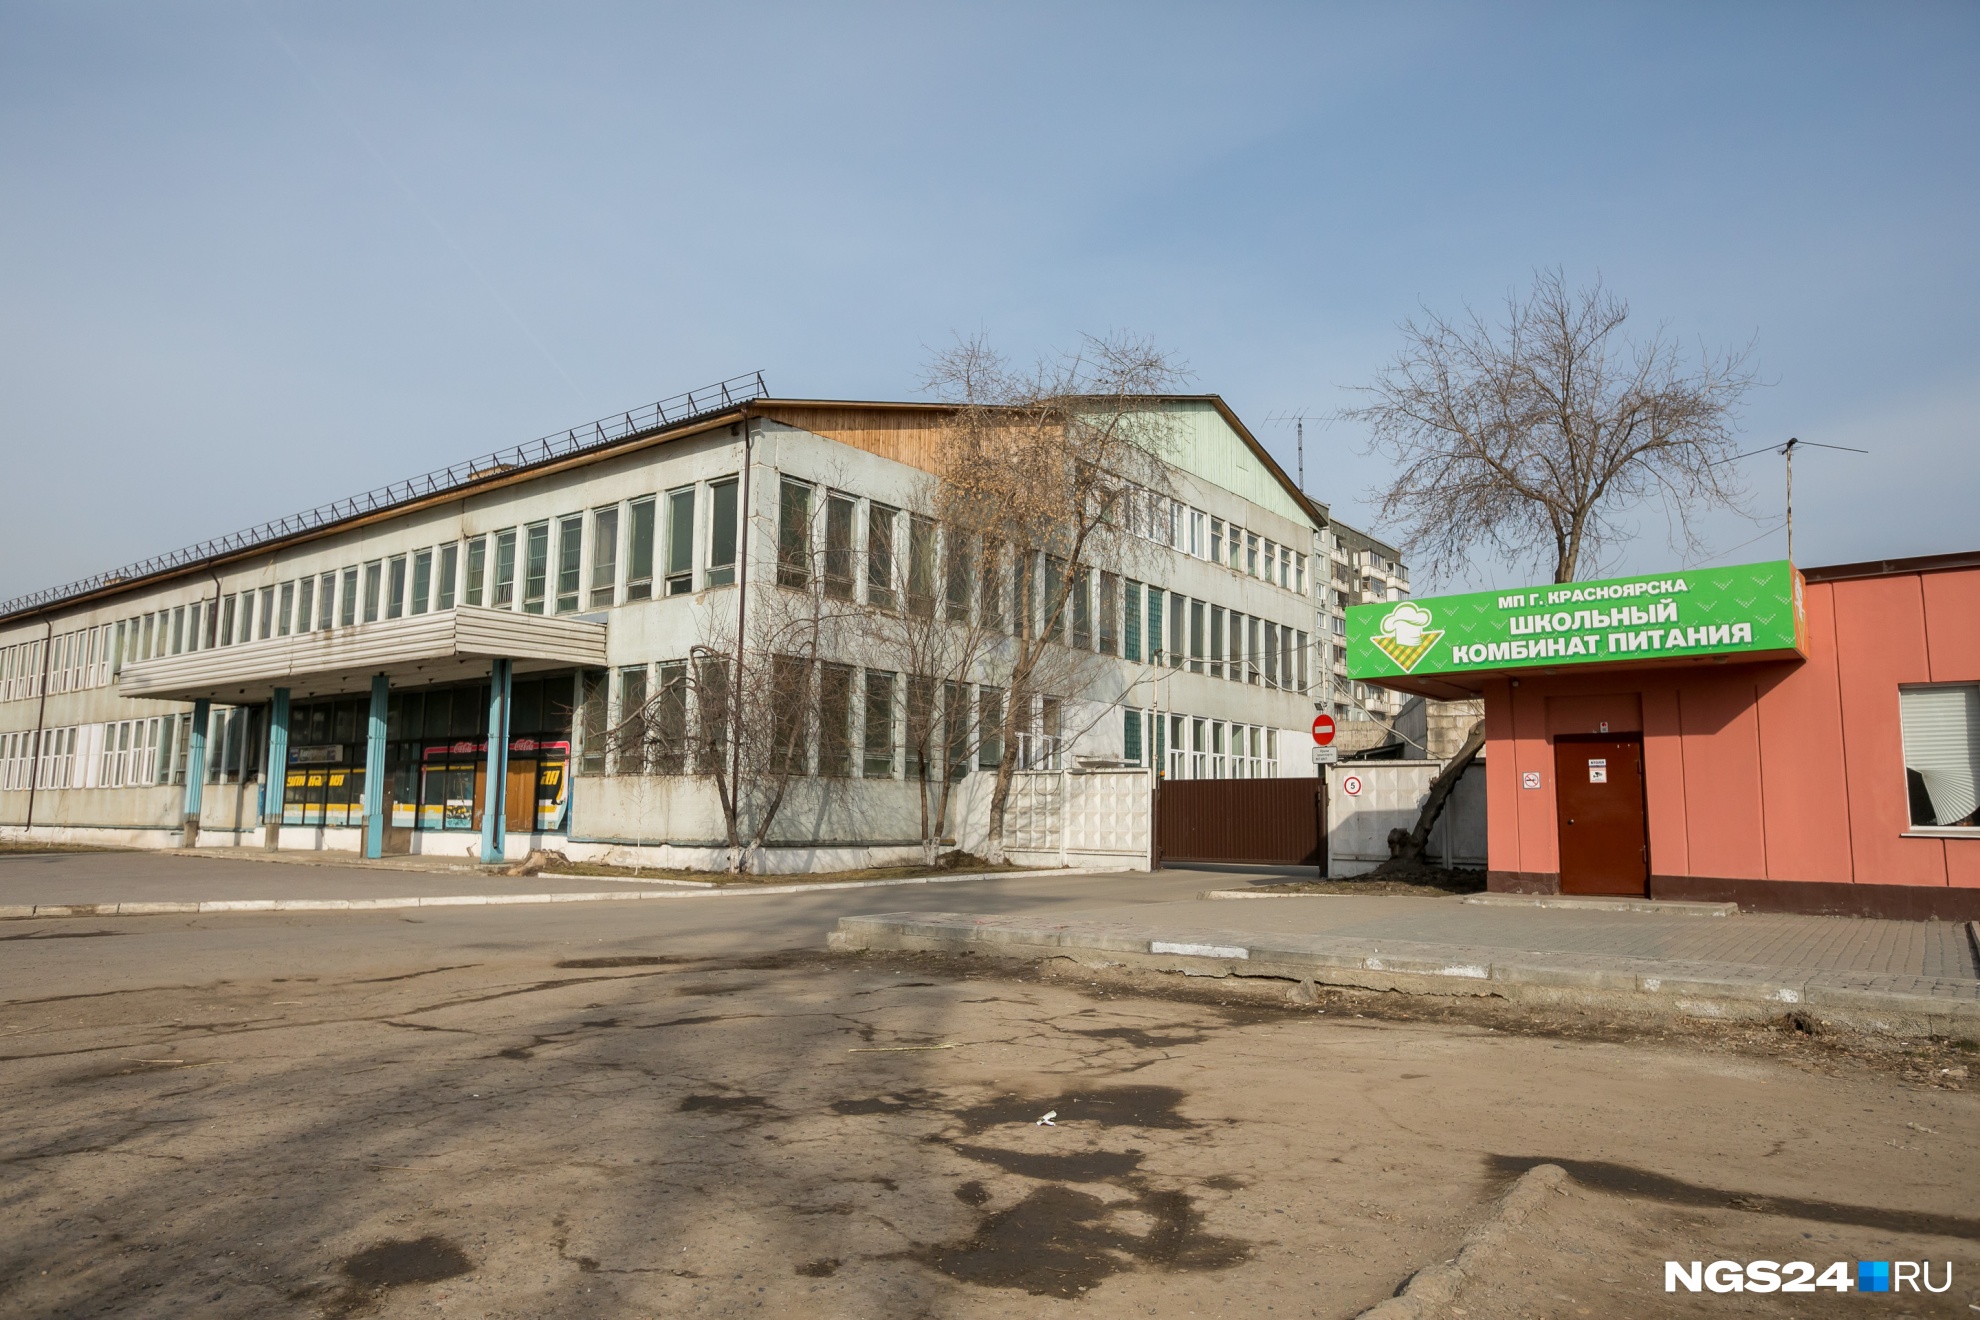 Здания Школьного комбината питания возле Качи недалеко от центра продают за 128 млн рублей